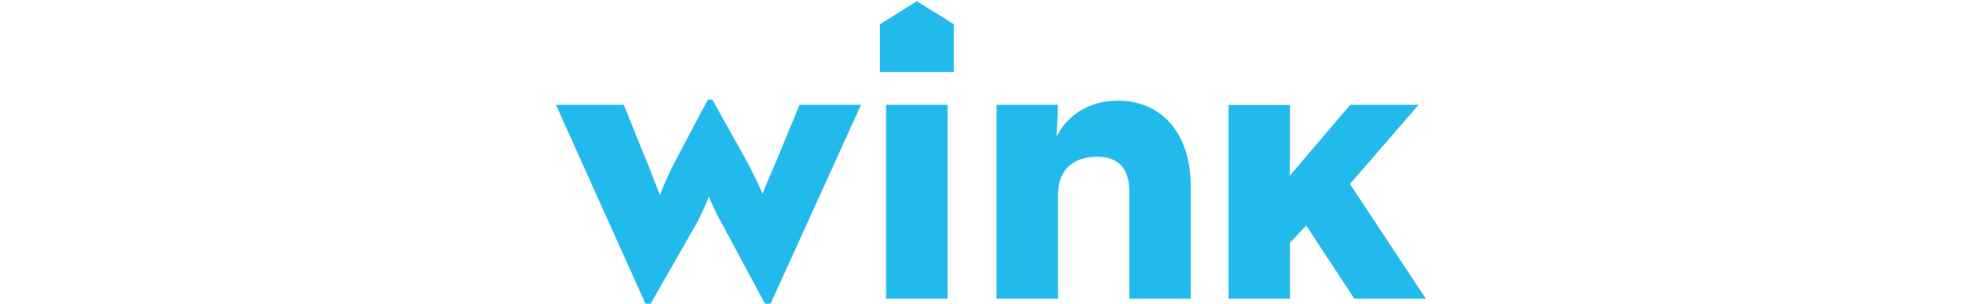 wink-logo-wide.png